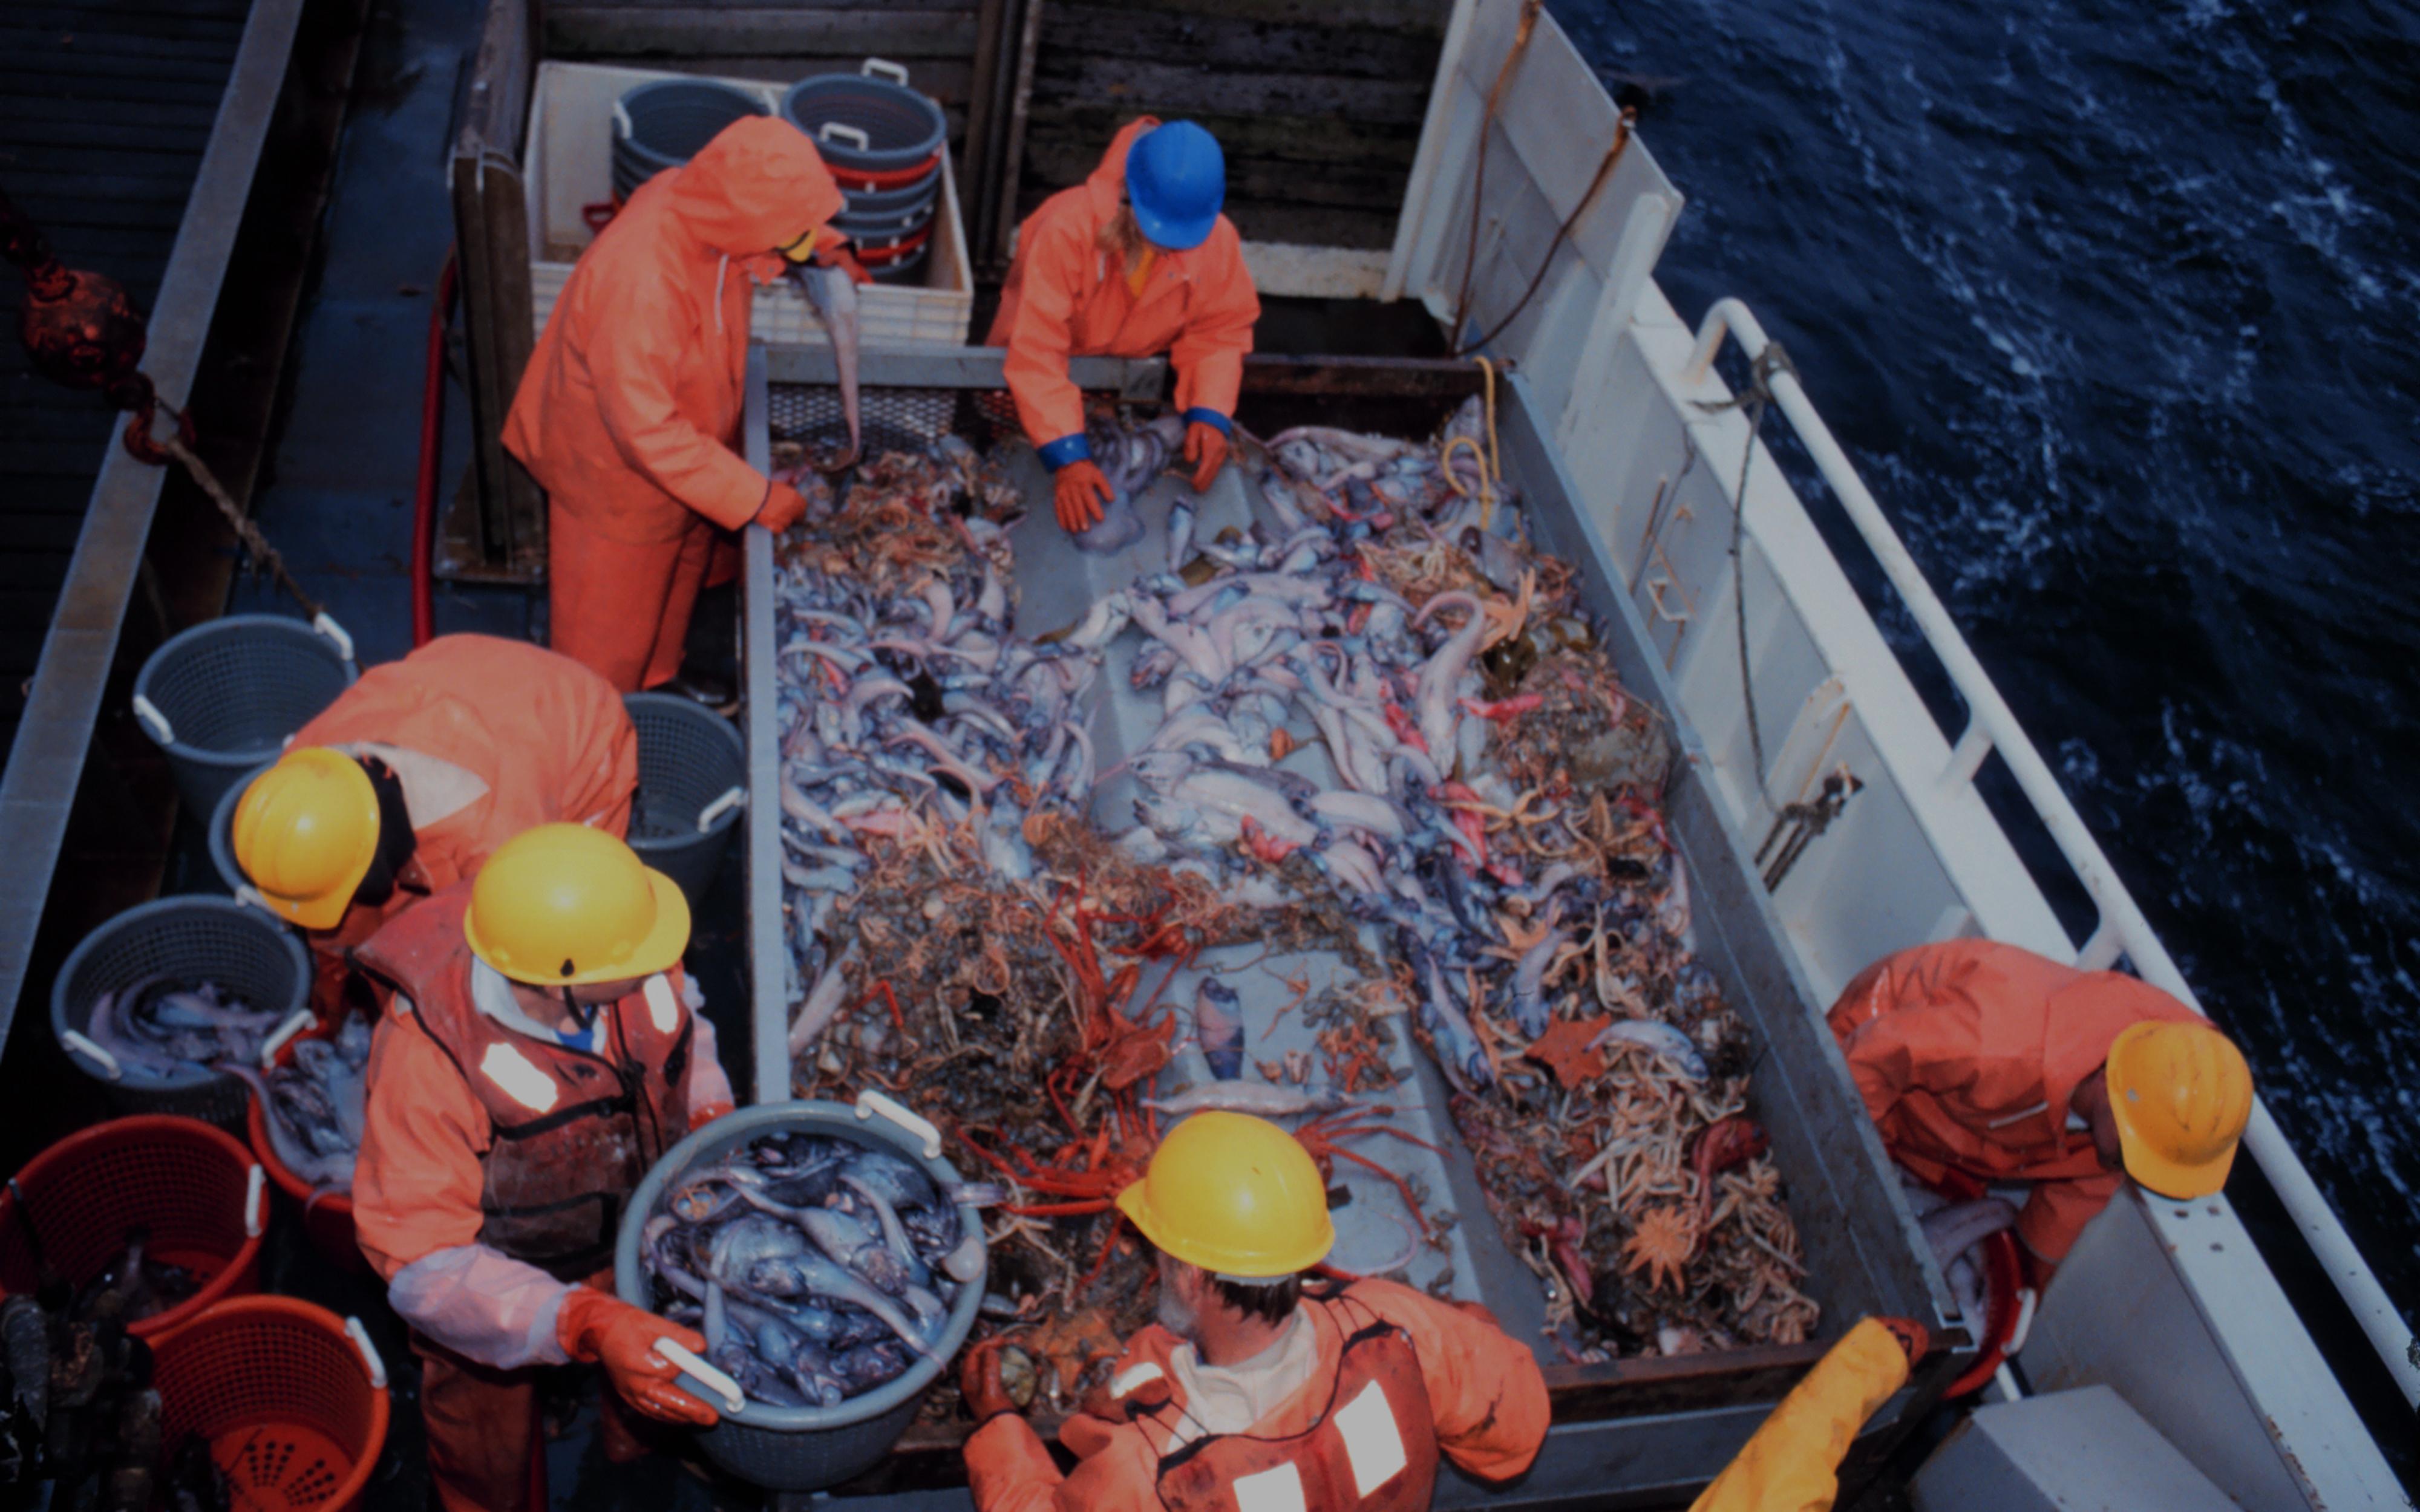 Pêche à l'aimant - Des règles à respecter - Loisirs en milieux aquatiques -  Eau et milieux aquatiques - Environnement et développement durable -  Actions de l'État - Les services de l'État en Morbihan